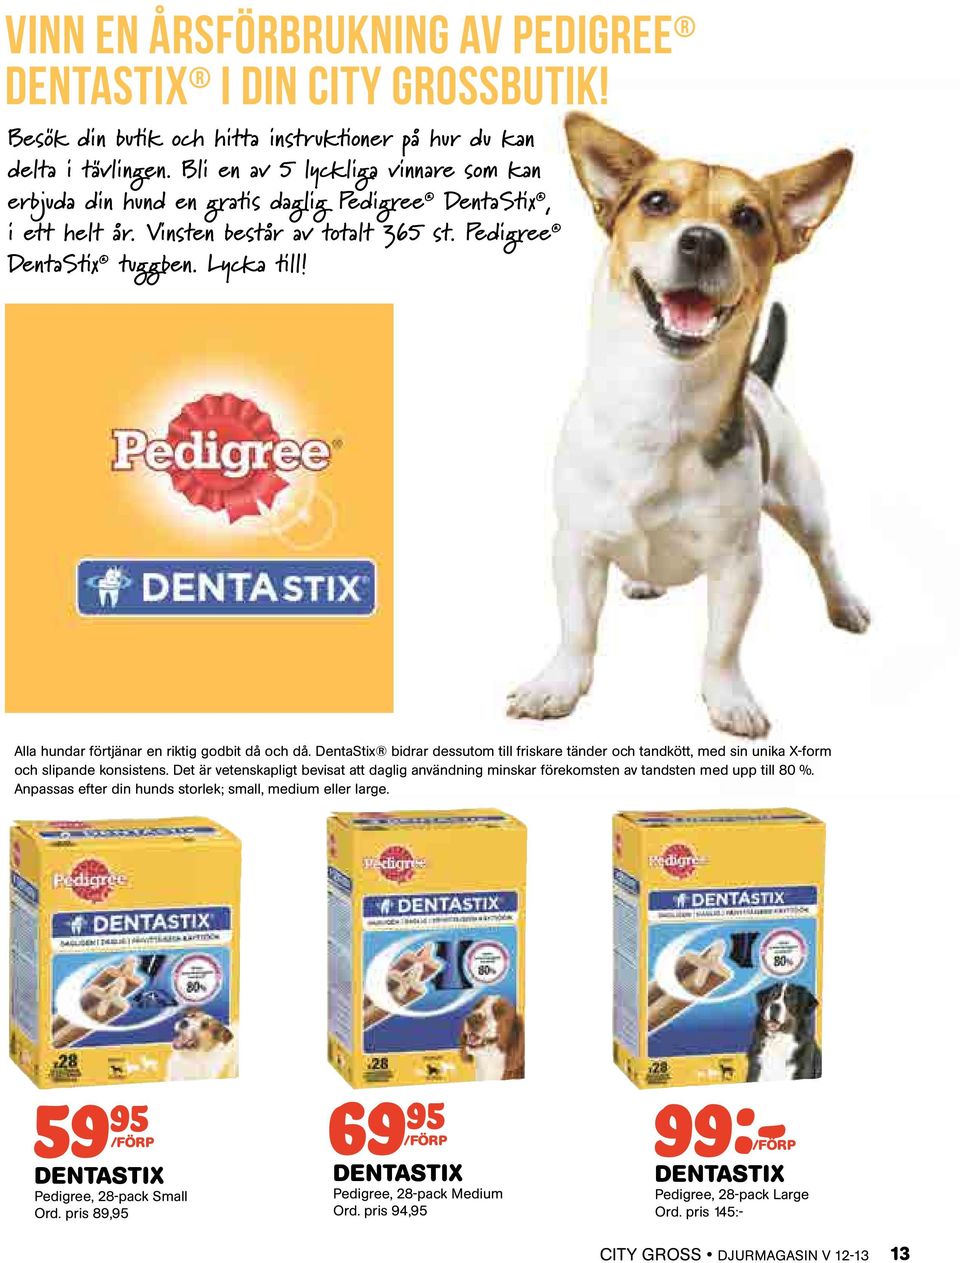 Alla hundar förtjänar en riktig godbit då och då. DentaStix bidrar dessutom till friskare tänder och tandkött, med sin unika X-form och slipande konsistens.